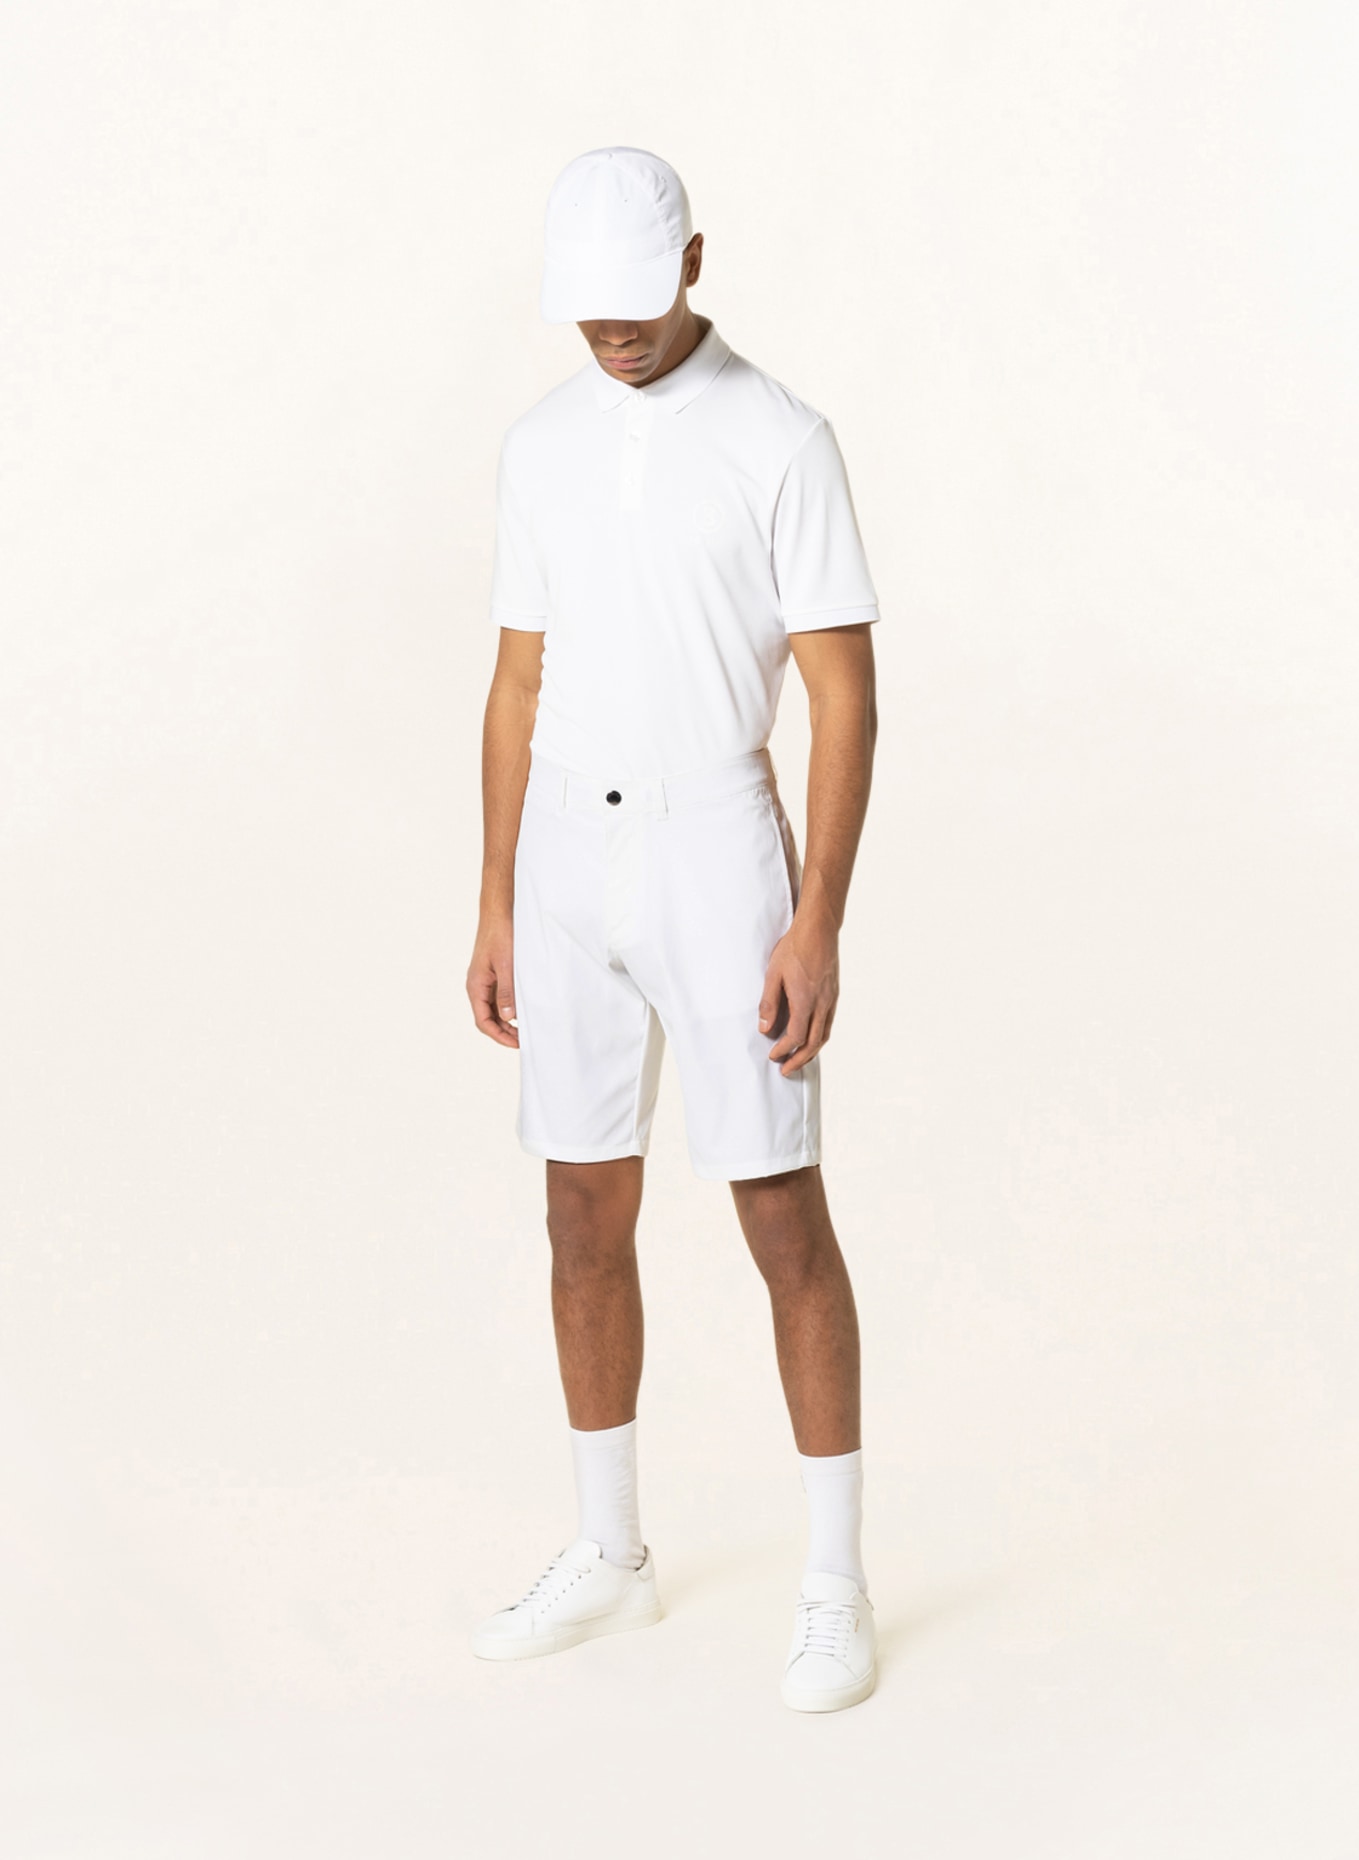 BOGNER Golf shorts GORDEN in white | Breuninger